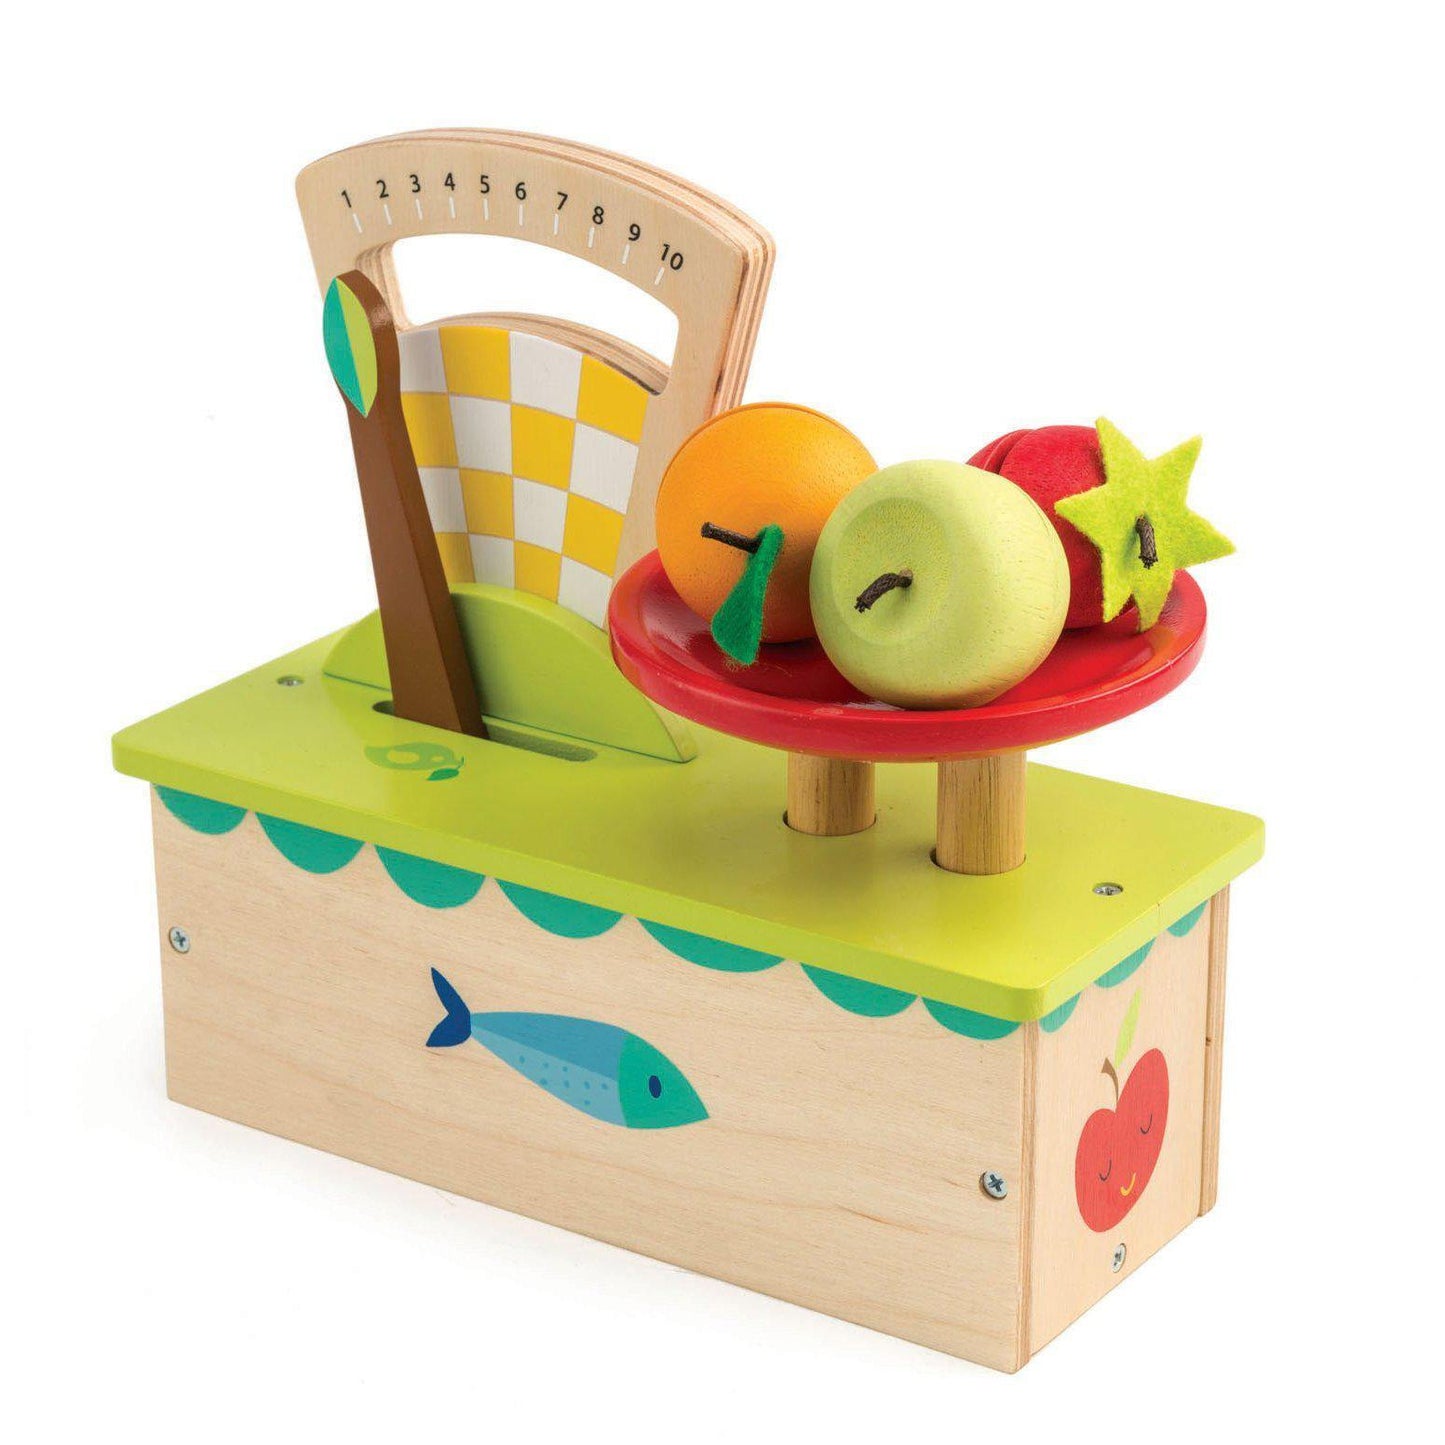 Mérleg, prémium minőségű fából - Weighing Scales - 4 darab - Tender Leaf Toys-Tender Leaf Toys-2-Játszma.ro - A maradandó élmények boltja